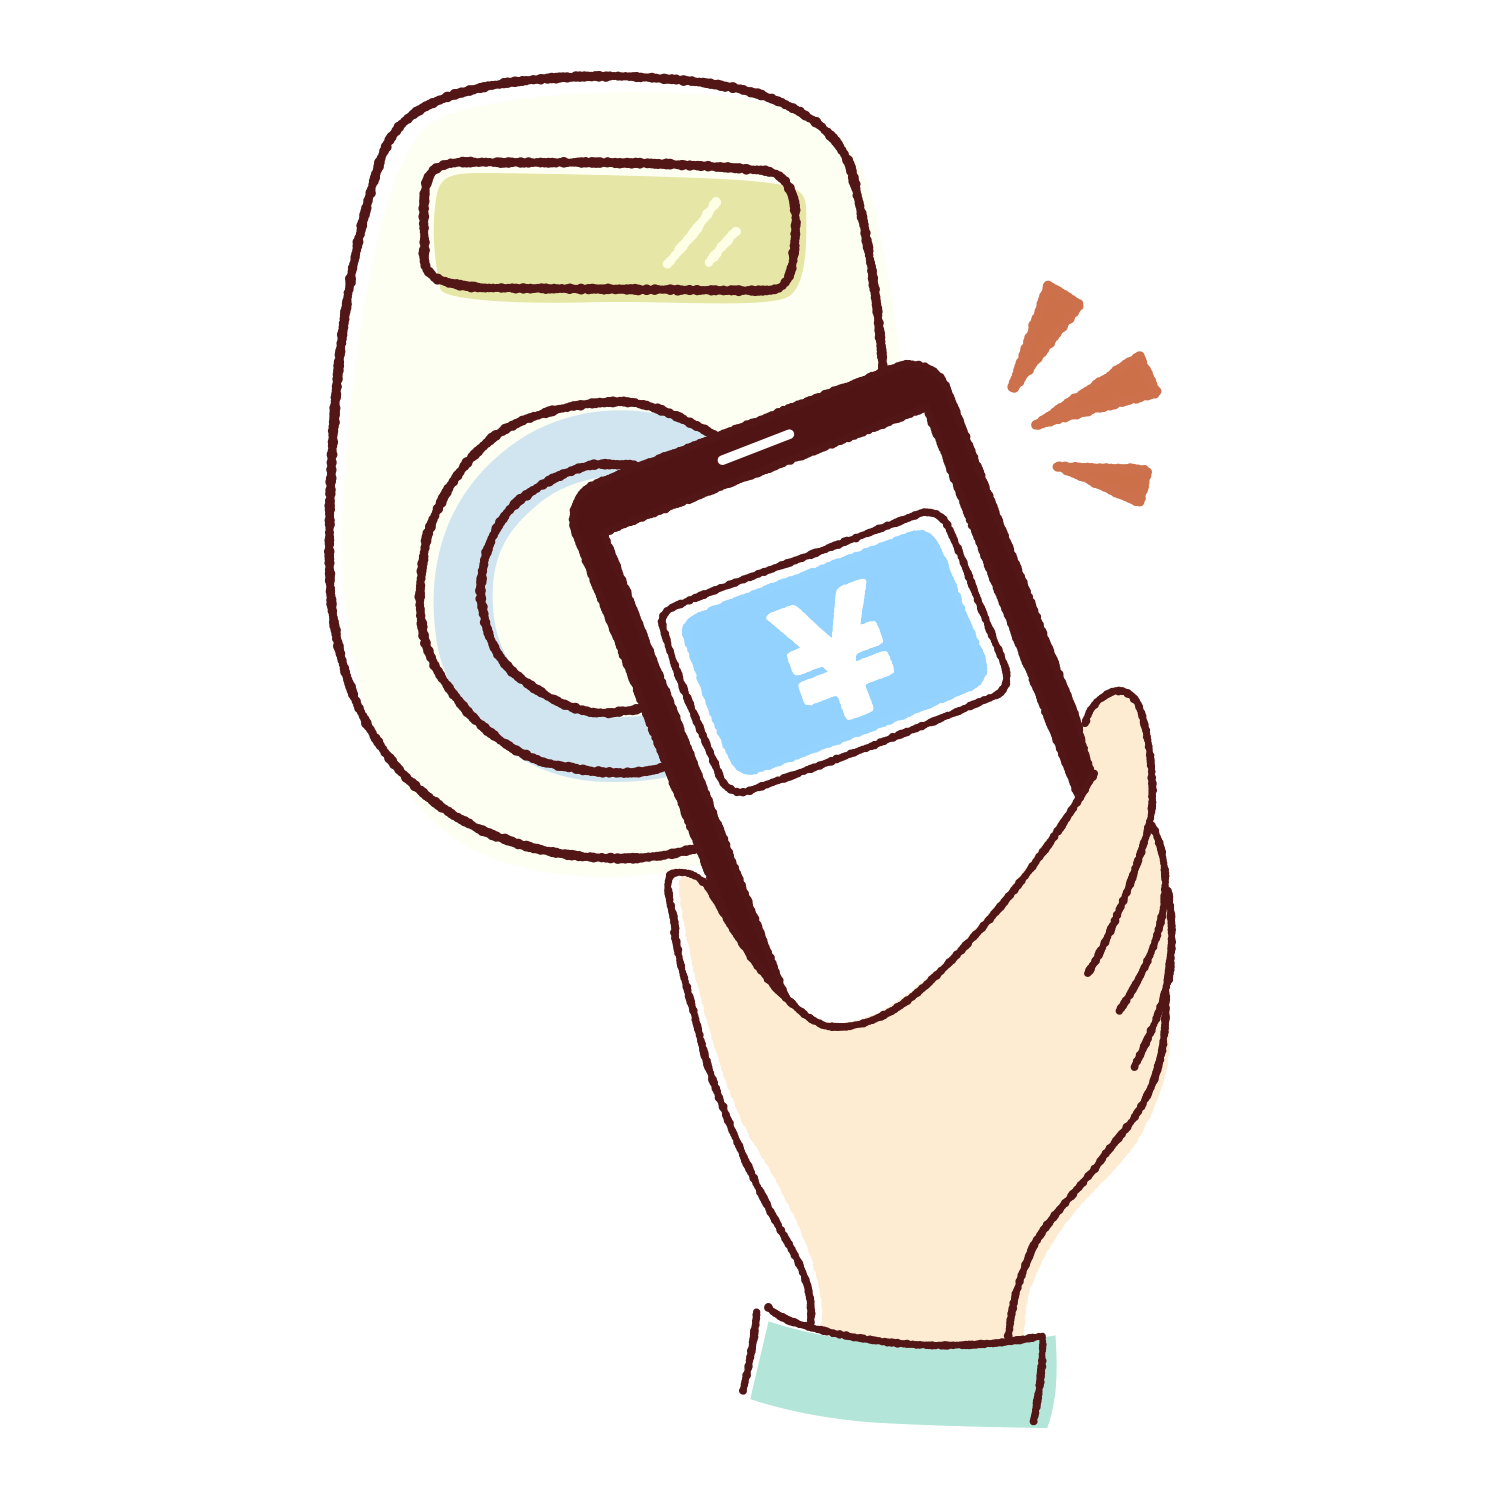 スマホで電子マネー決済のイラスト Illustration of electronic money payment with smartphone